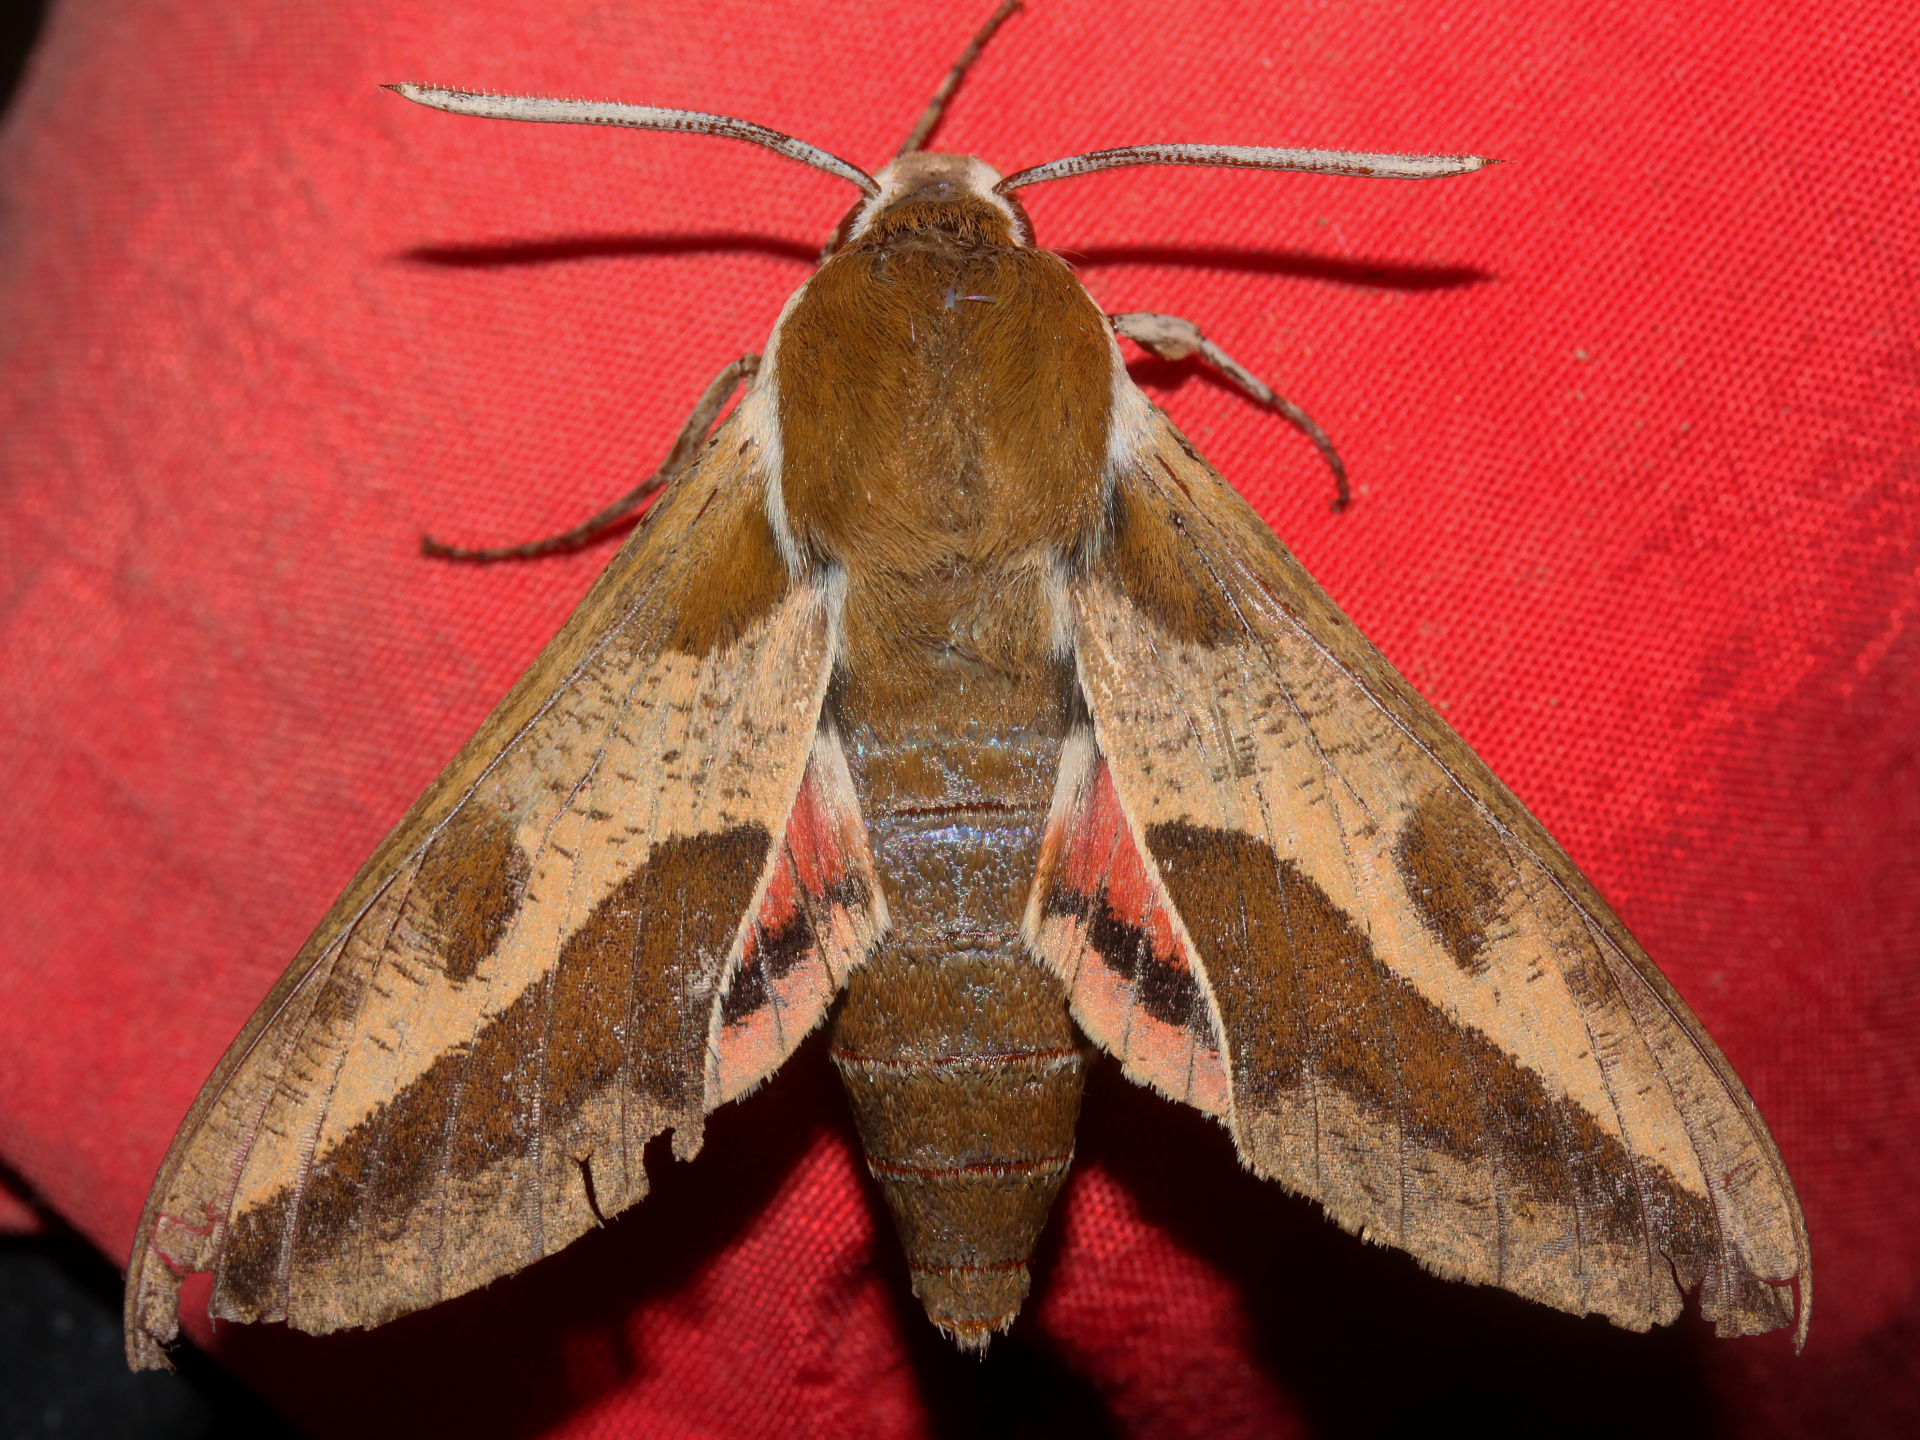 Hyles euphorbiae (Podróże » USA: Drogi nie obrane » Zwierzęta » Owady » Motyle i ćmy » Sphingidae)